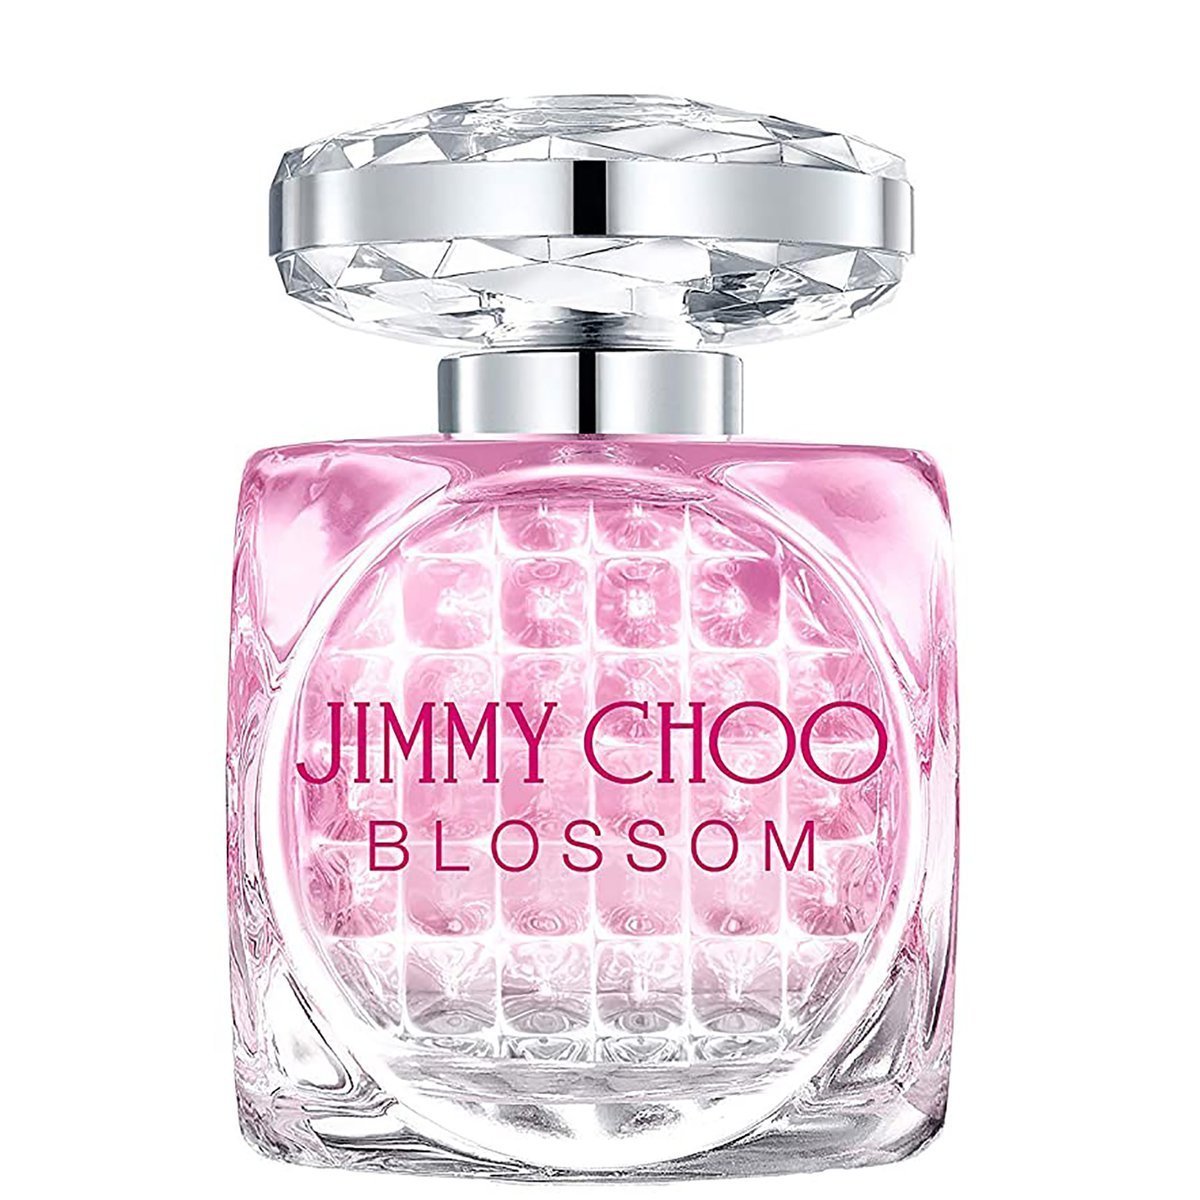 JIMMY CHOO Blossom Special Edition EDP 60ml Tester - Pachnidełko